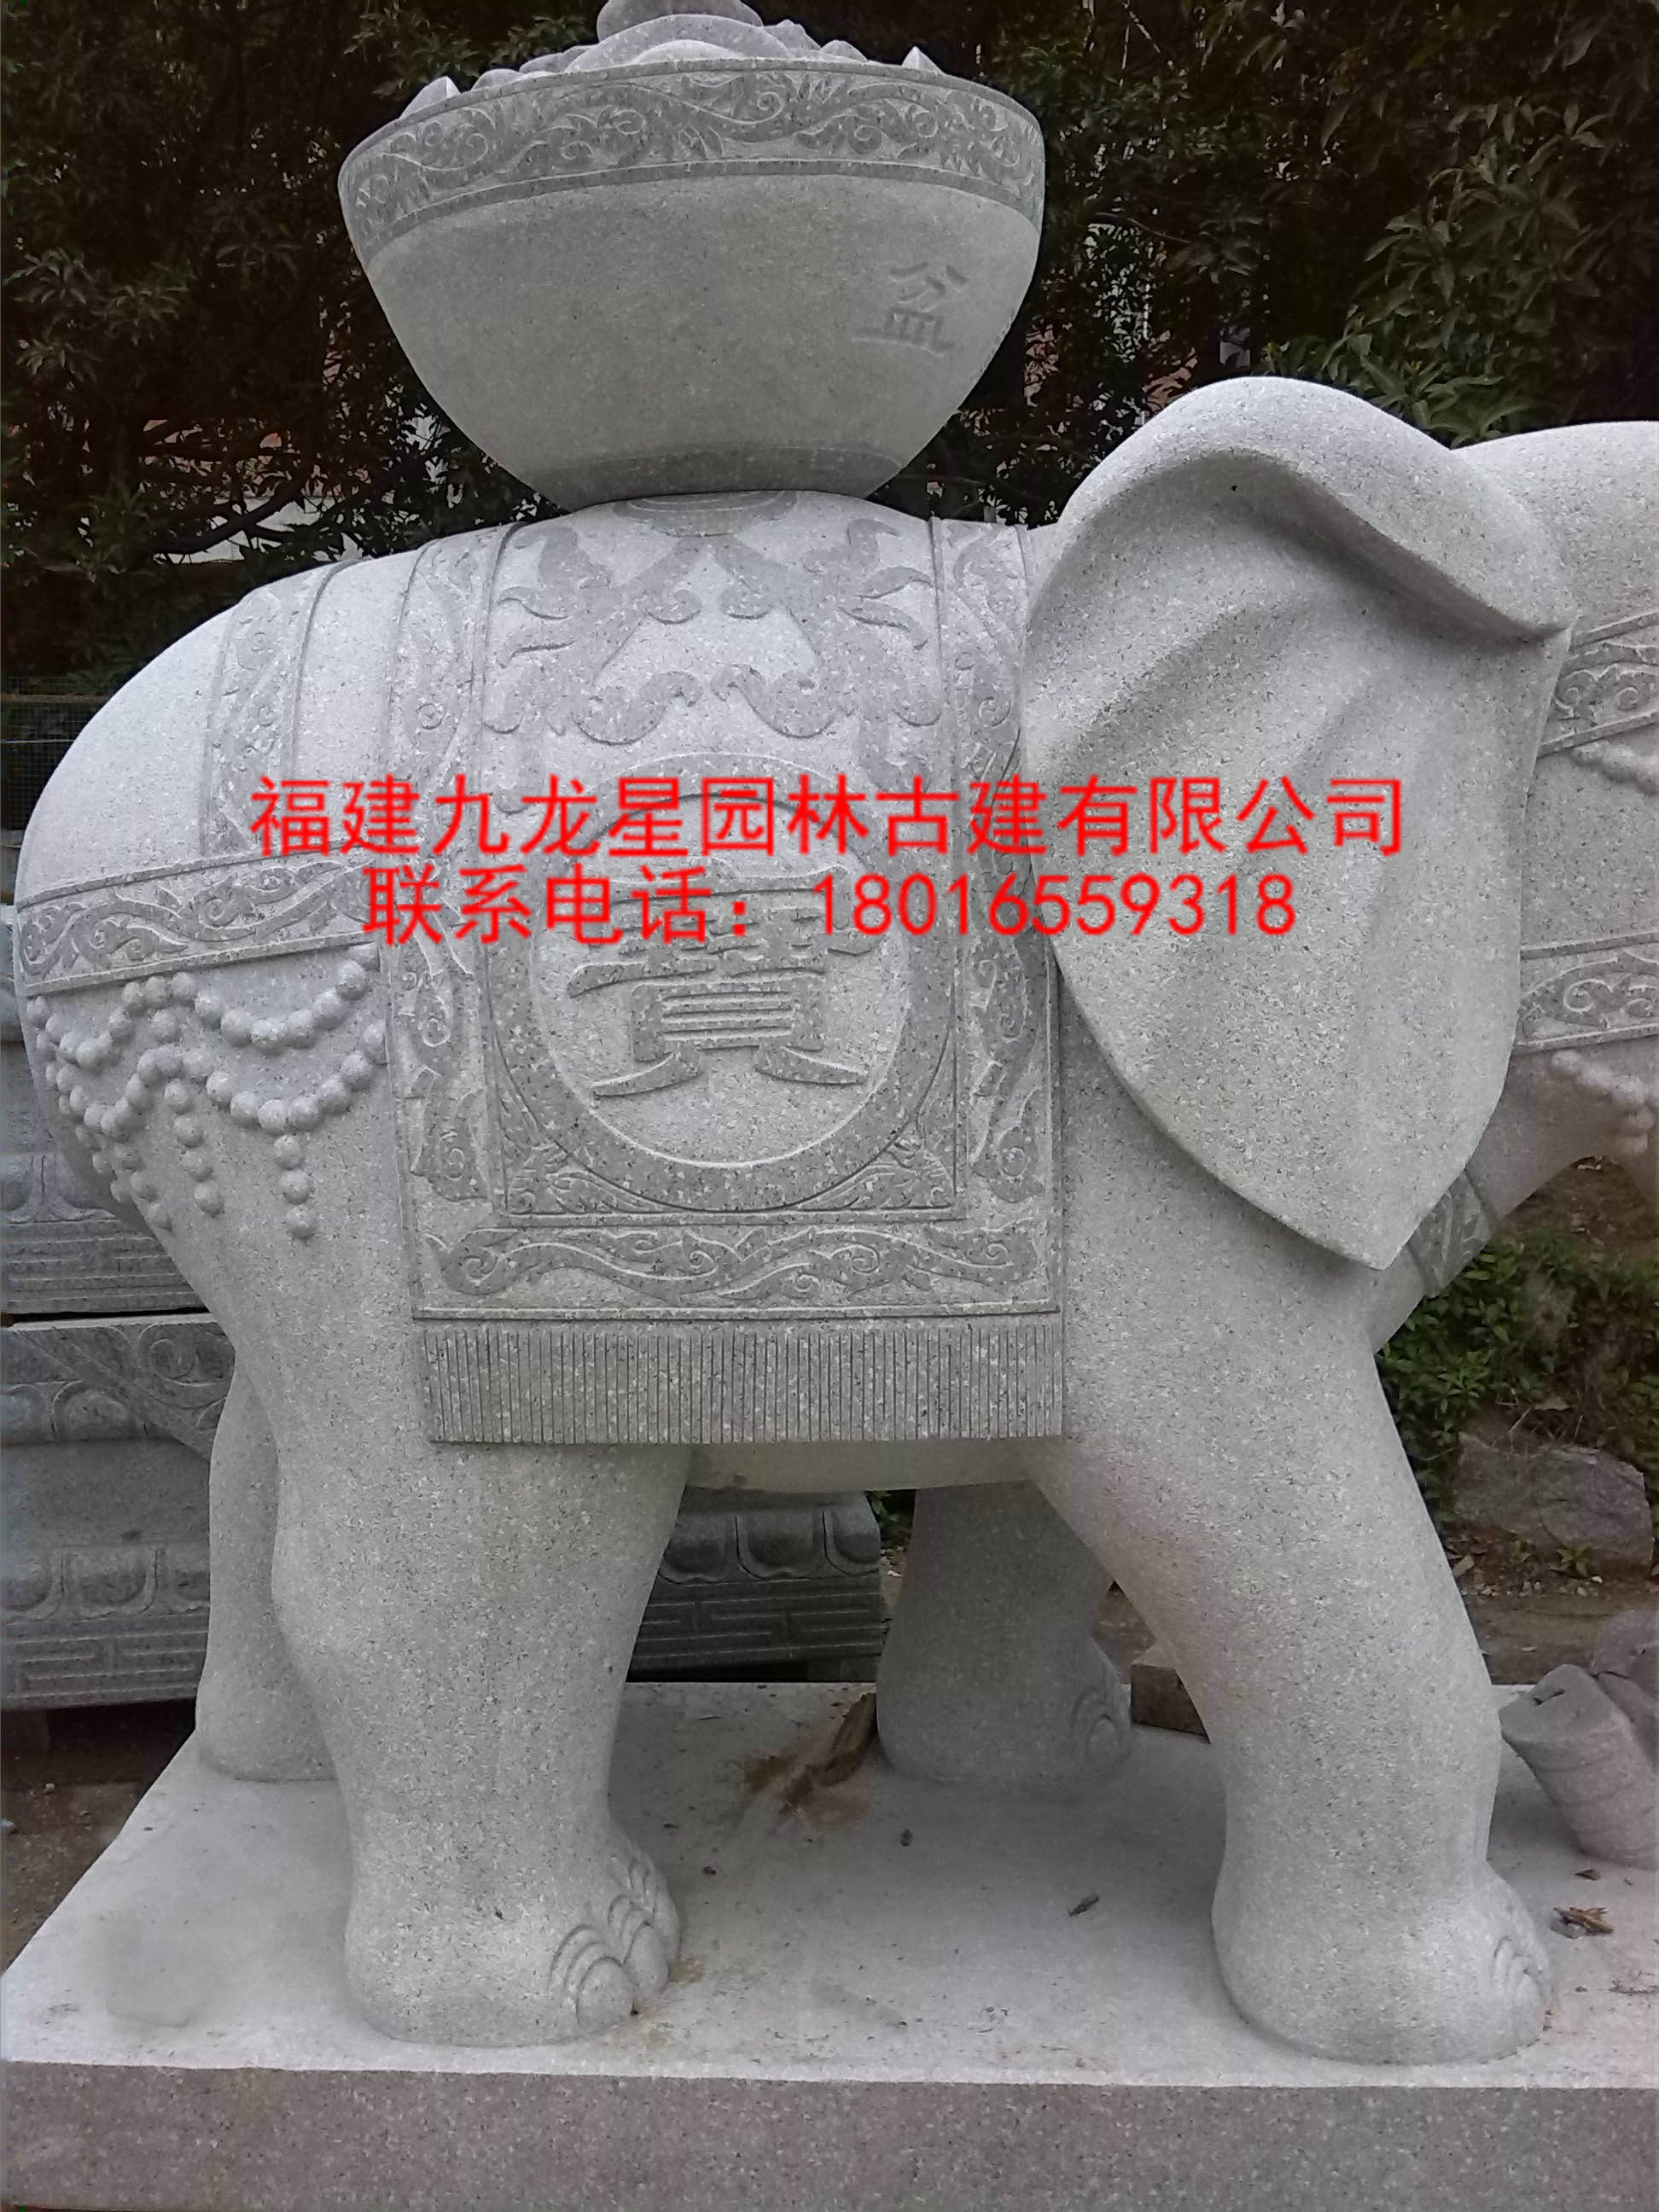 供应石雕象工艺品 汉白玉石雕大象 门口石雕象摆件 门口招财纳福汉白玉石雕大象图片